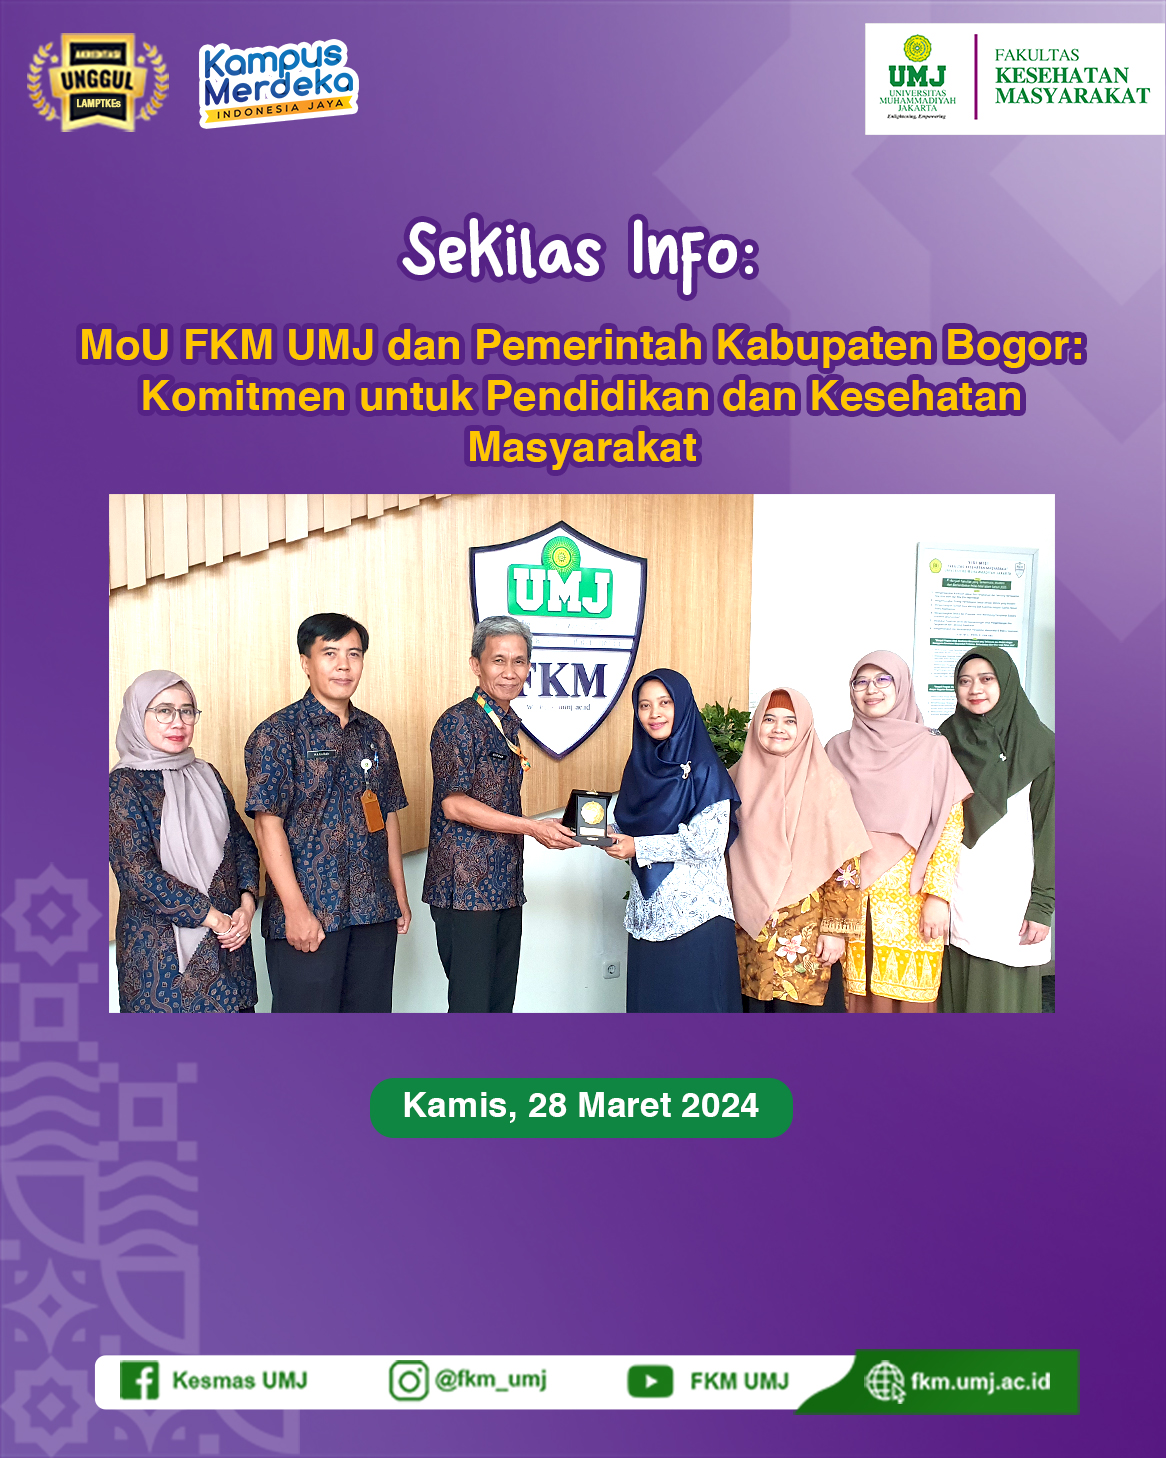 MoU FKM UMJ dan Pemerintah Kabupaten Bogor: Komitmen untuk Pendidikan dan Kesehatan Masyarakat